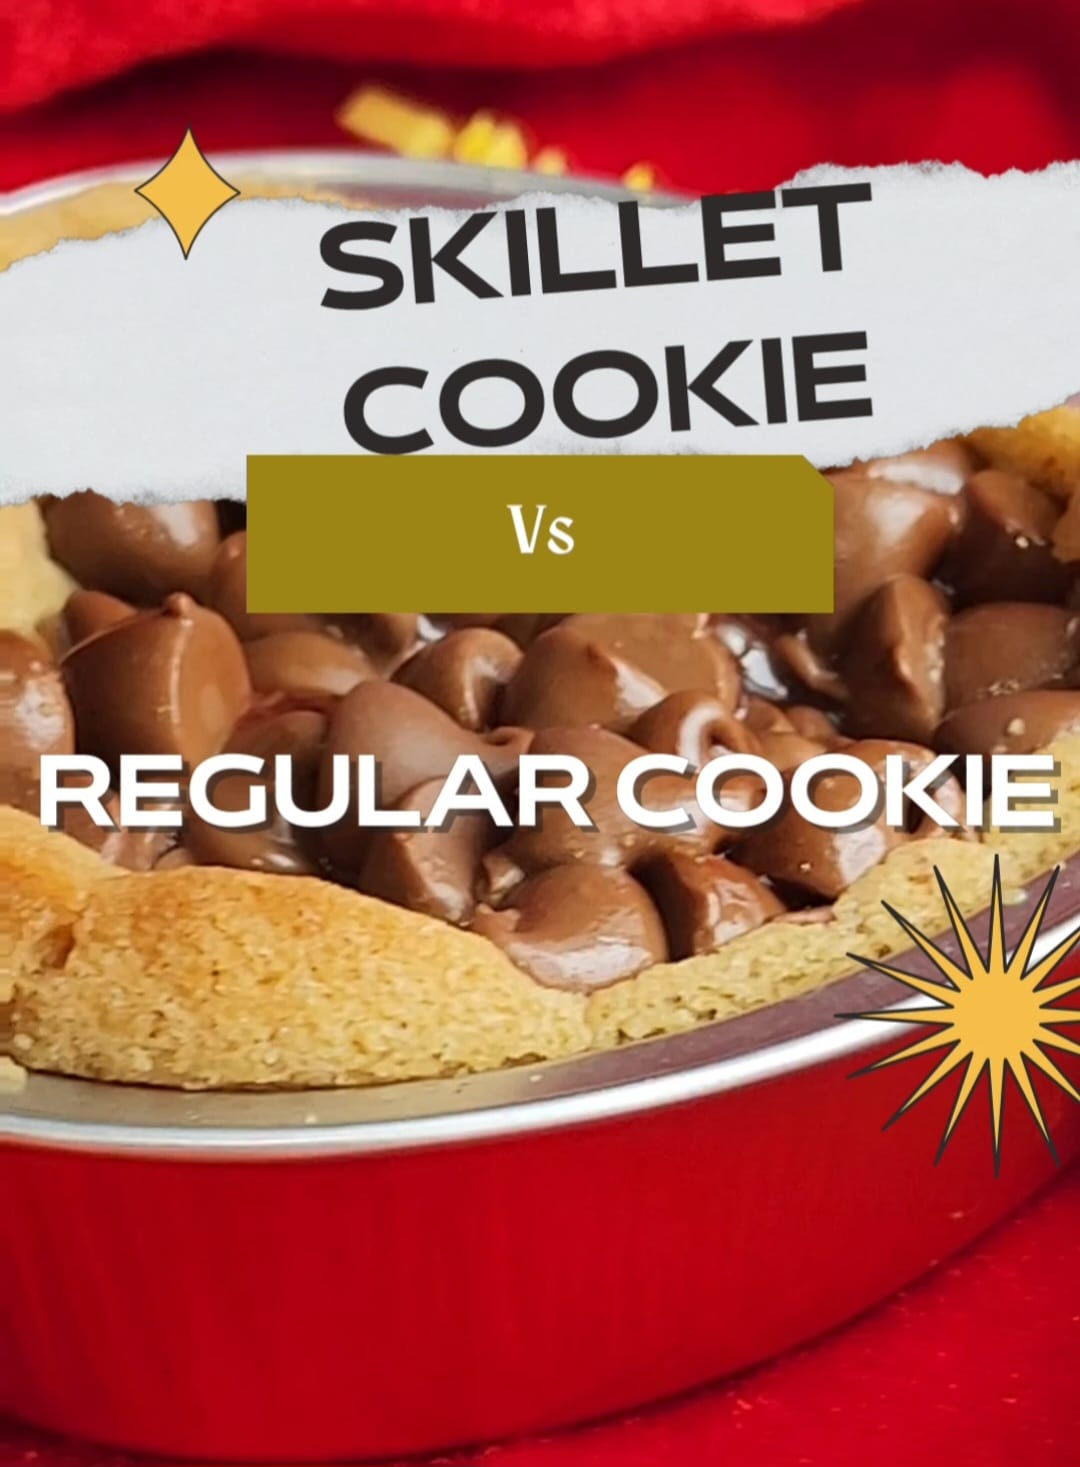 Load video: Skillet Cookie vs Regular cookie